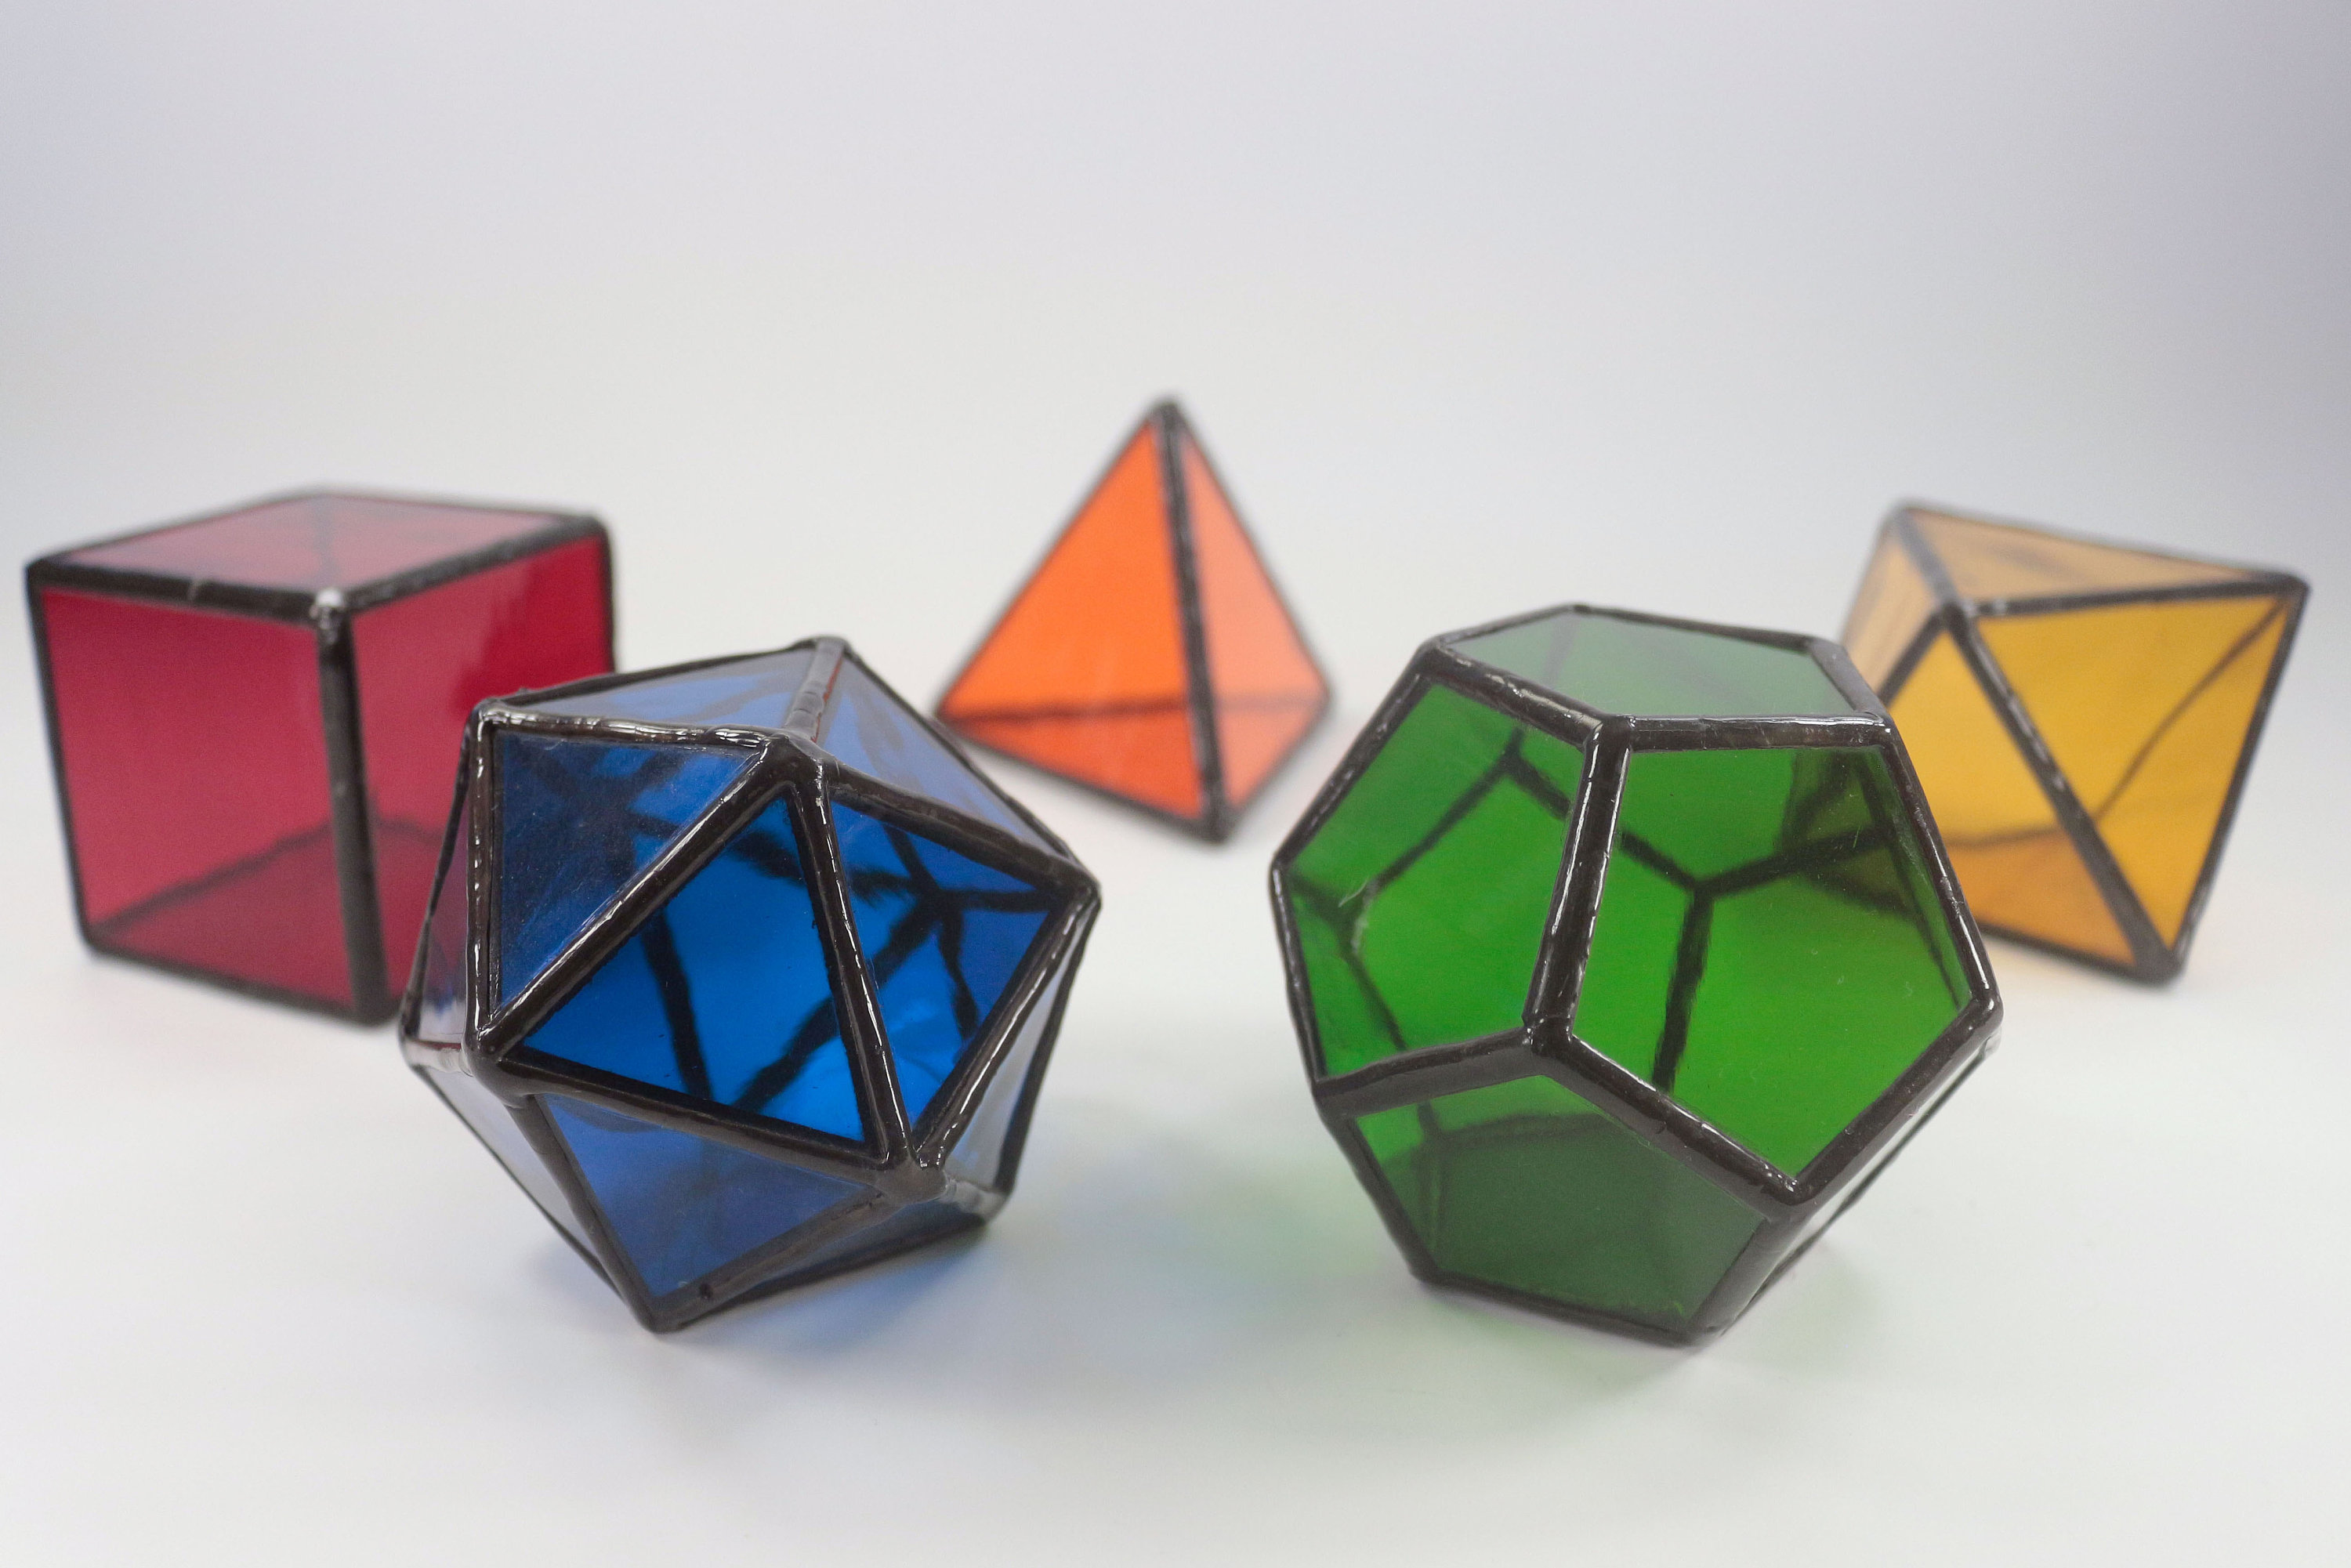 Les 5 solides de platon ou les 5 polyèdres réguliers convexes